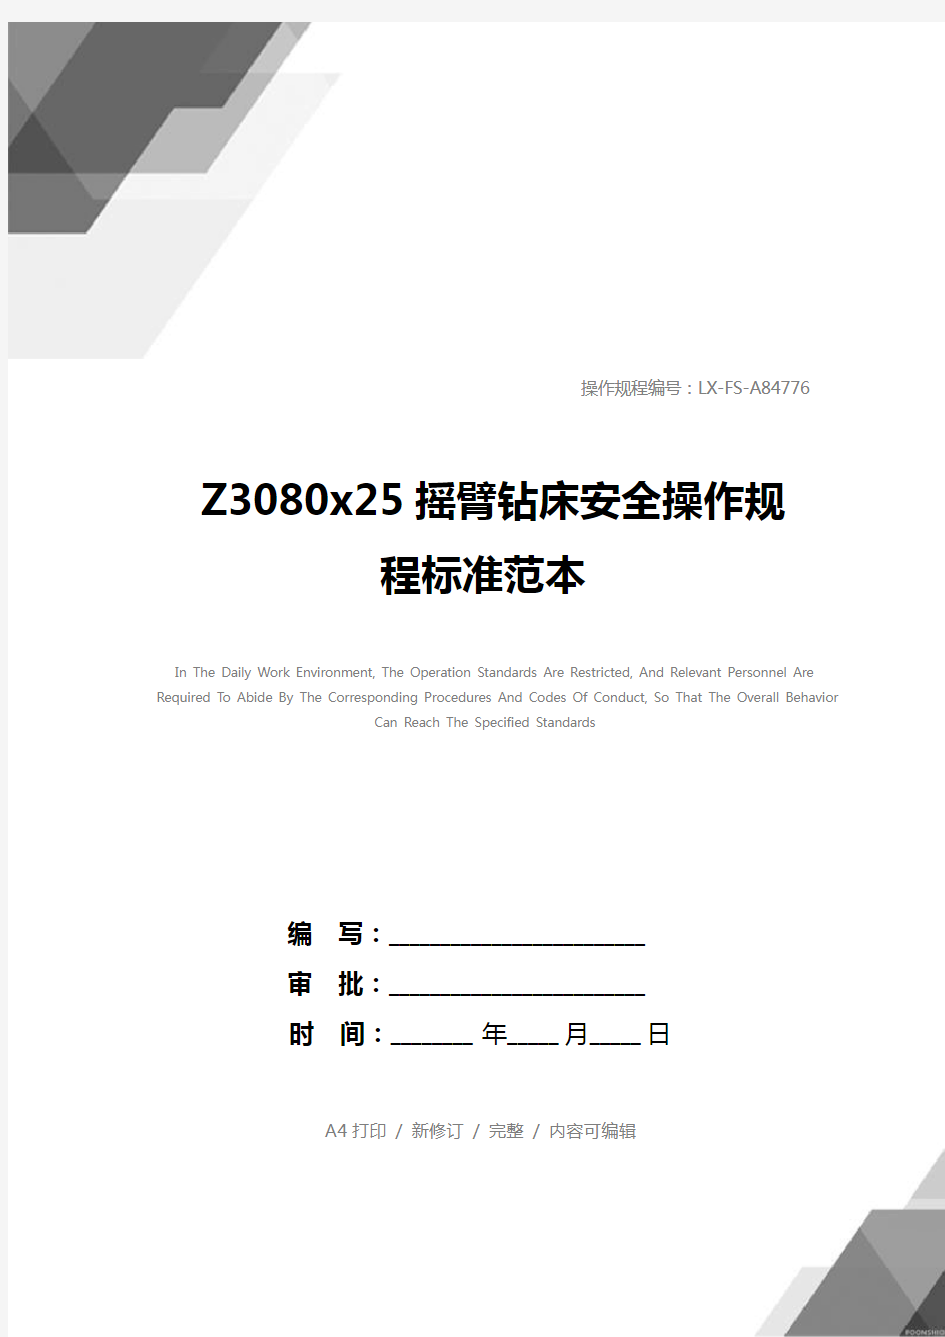 Z3080x25摇臂钻床安全操作规程标准范本